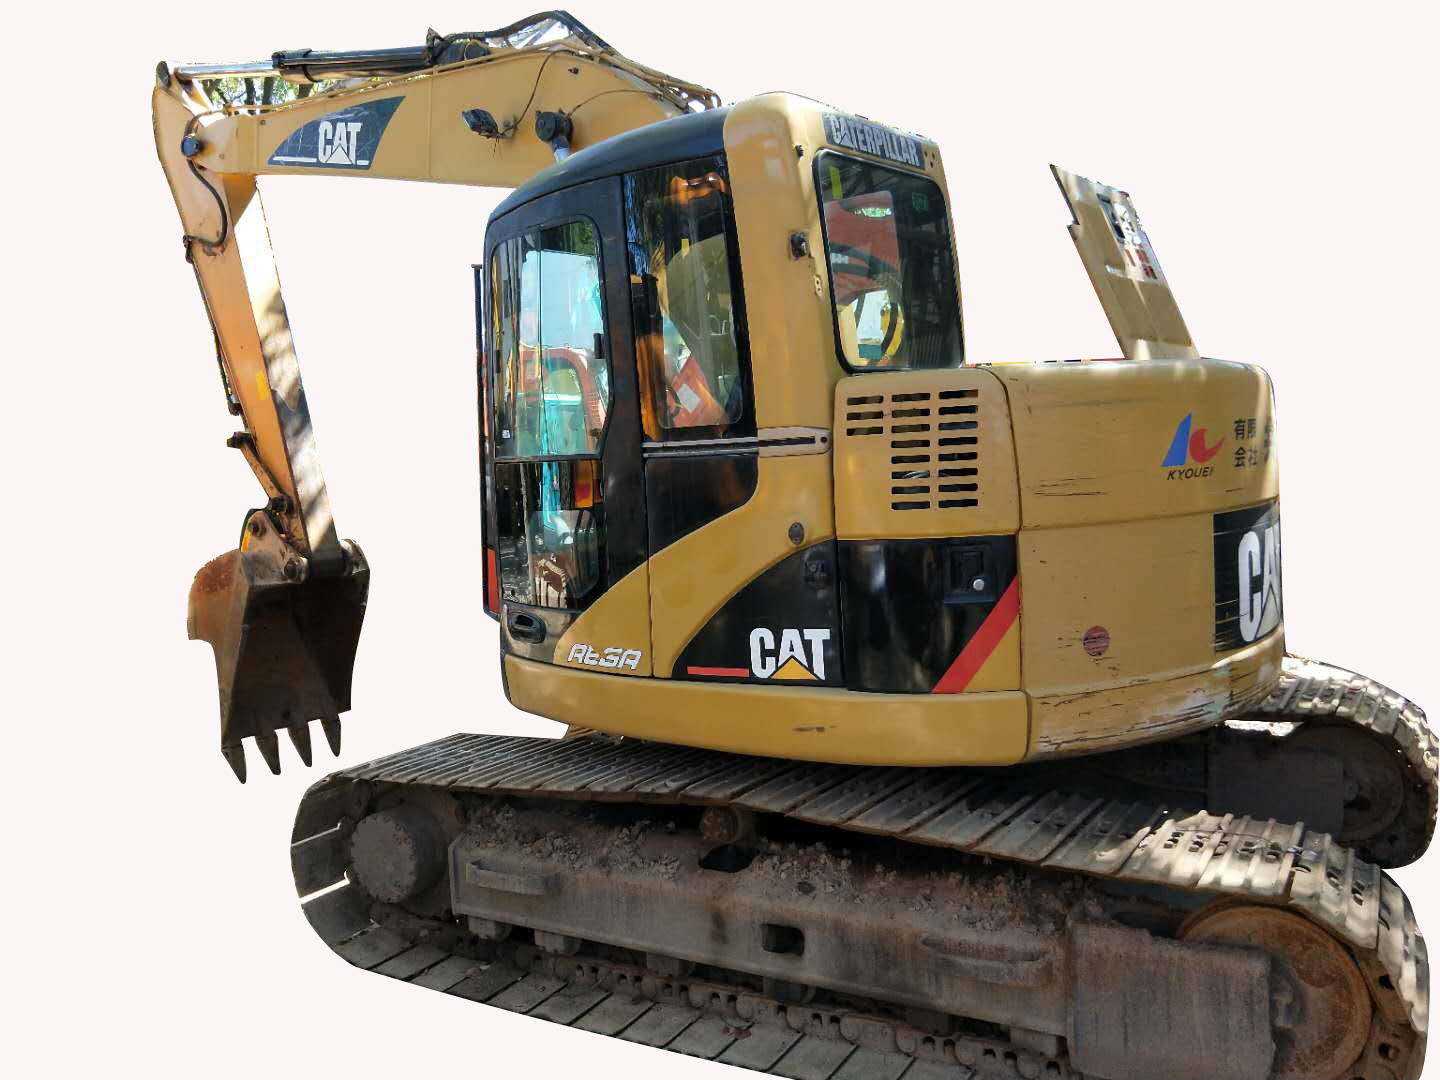 Used Caterpillar Crawler Excavator 313c for Sale